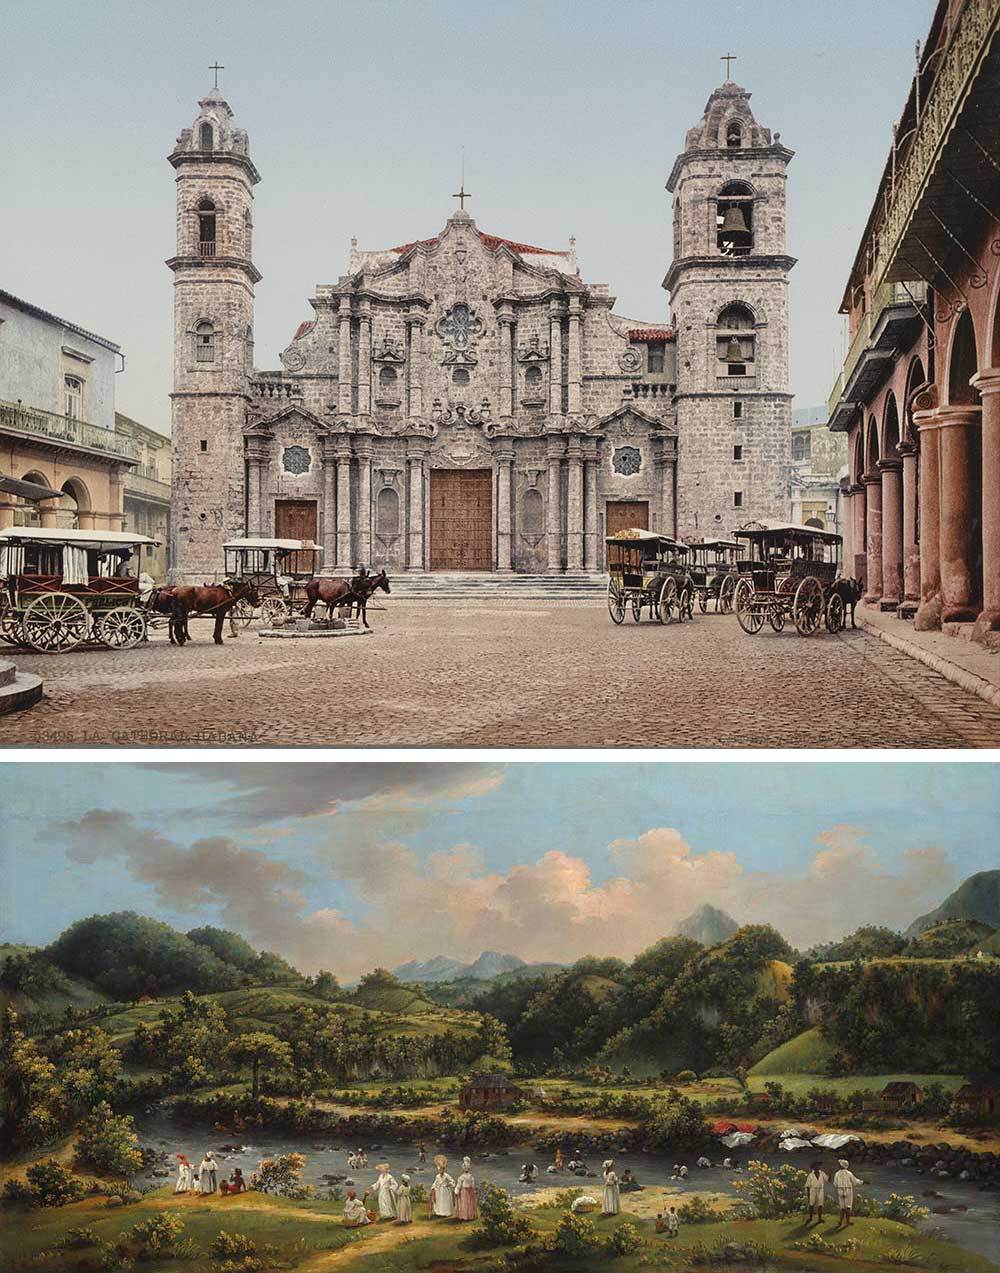 Top: Catedral de la Virgen María de la Concepción Inmaculada, c. 1900. Photograph by William Henry Jackson. Bottom: View on the River Roseau, Dominica, by Agostino Brunias, c. 1770.